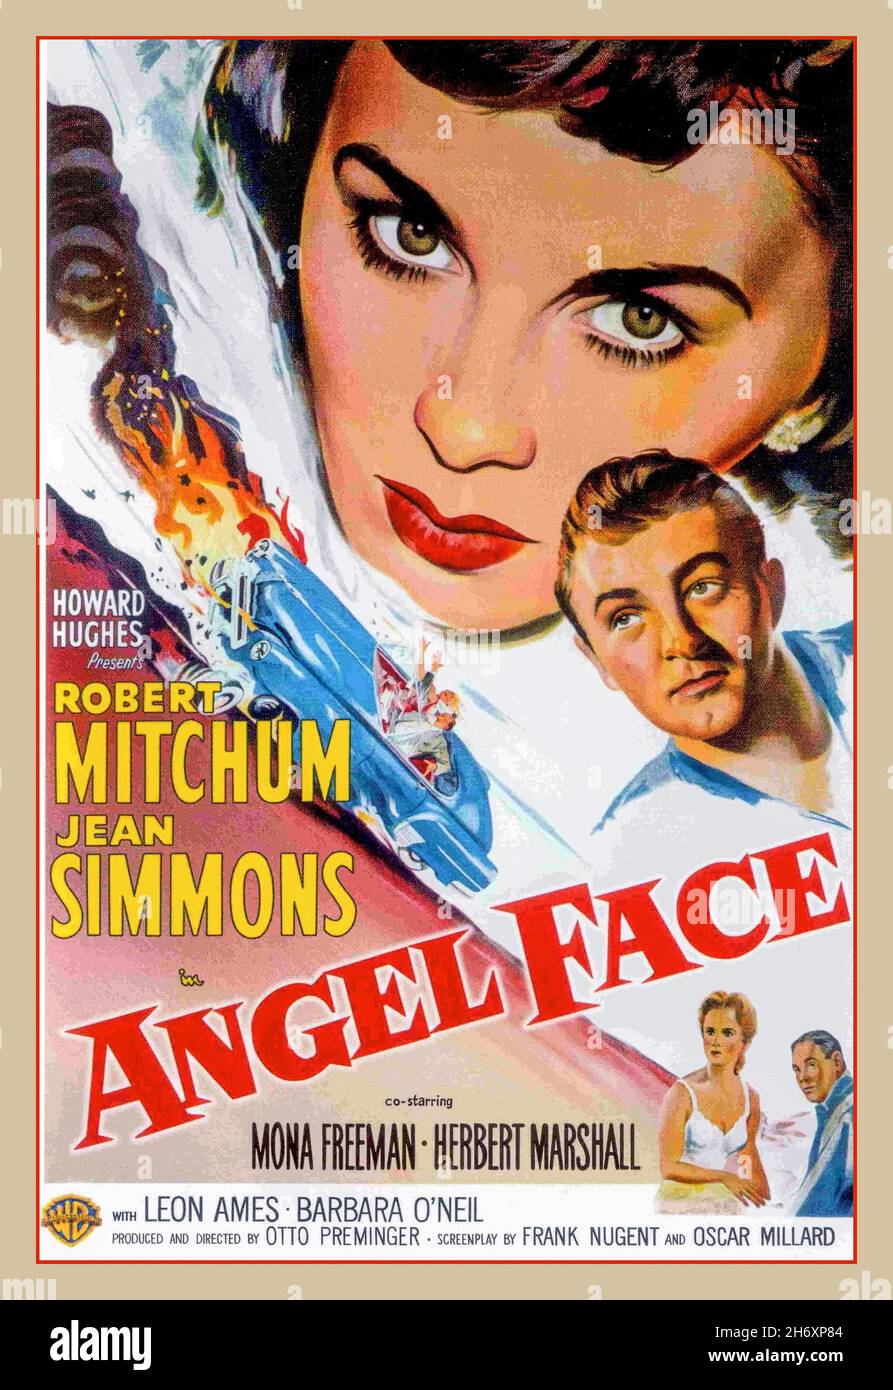 ANGEL FACE Vintage affiche de film rétro des années 1950 avec Robert  Mitchum Jean Simmons Mona Freeman Herbert Marshall réalisé et produit par  Otto Preminger.Angel face est un film noir et blanc